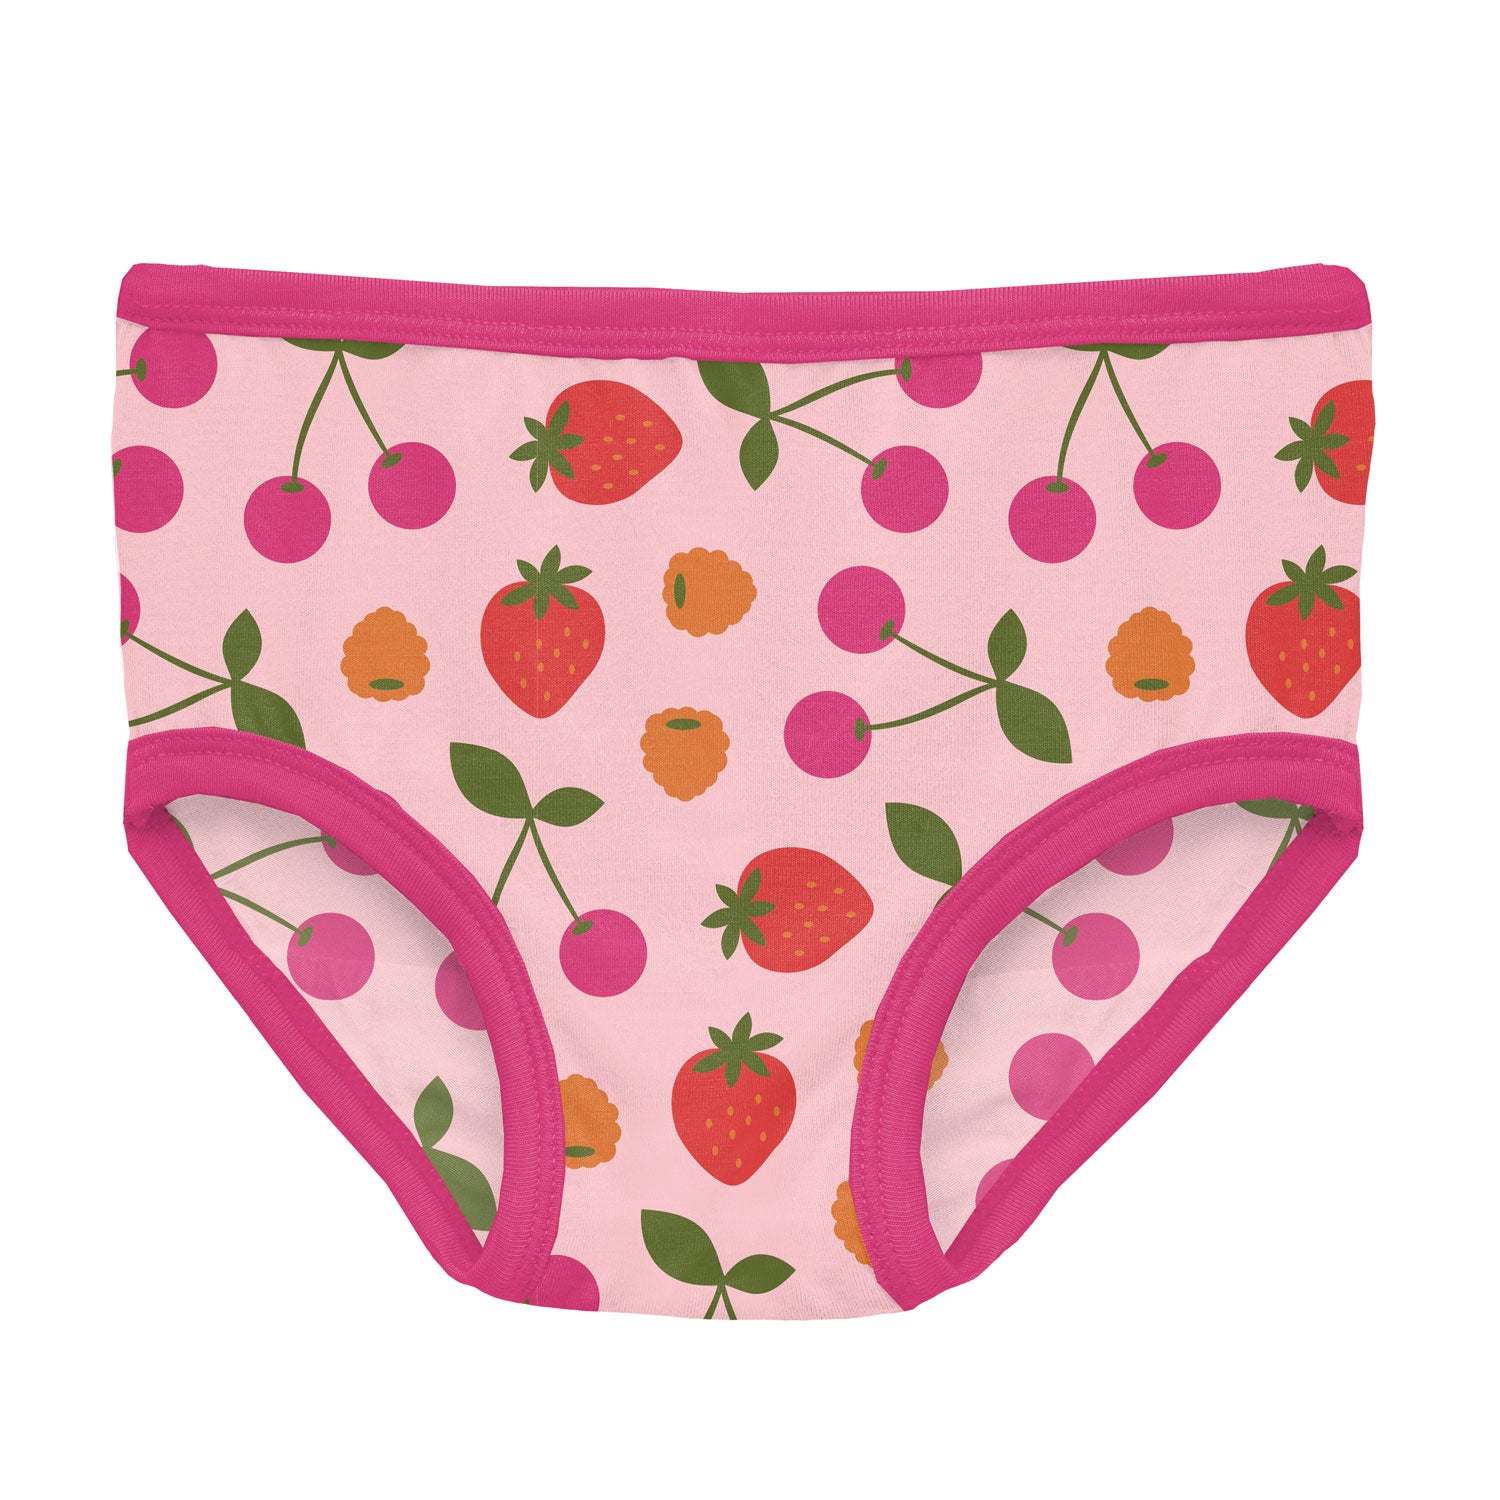 Kickee Pants Bamboo Girls Underwear - Lotus Berries